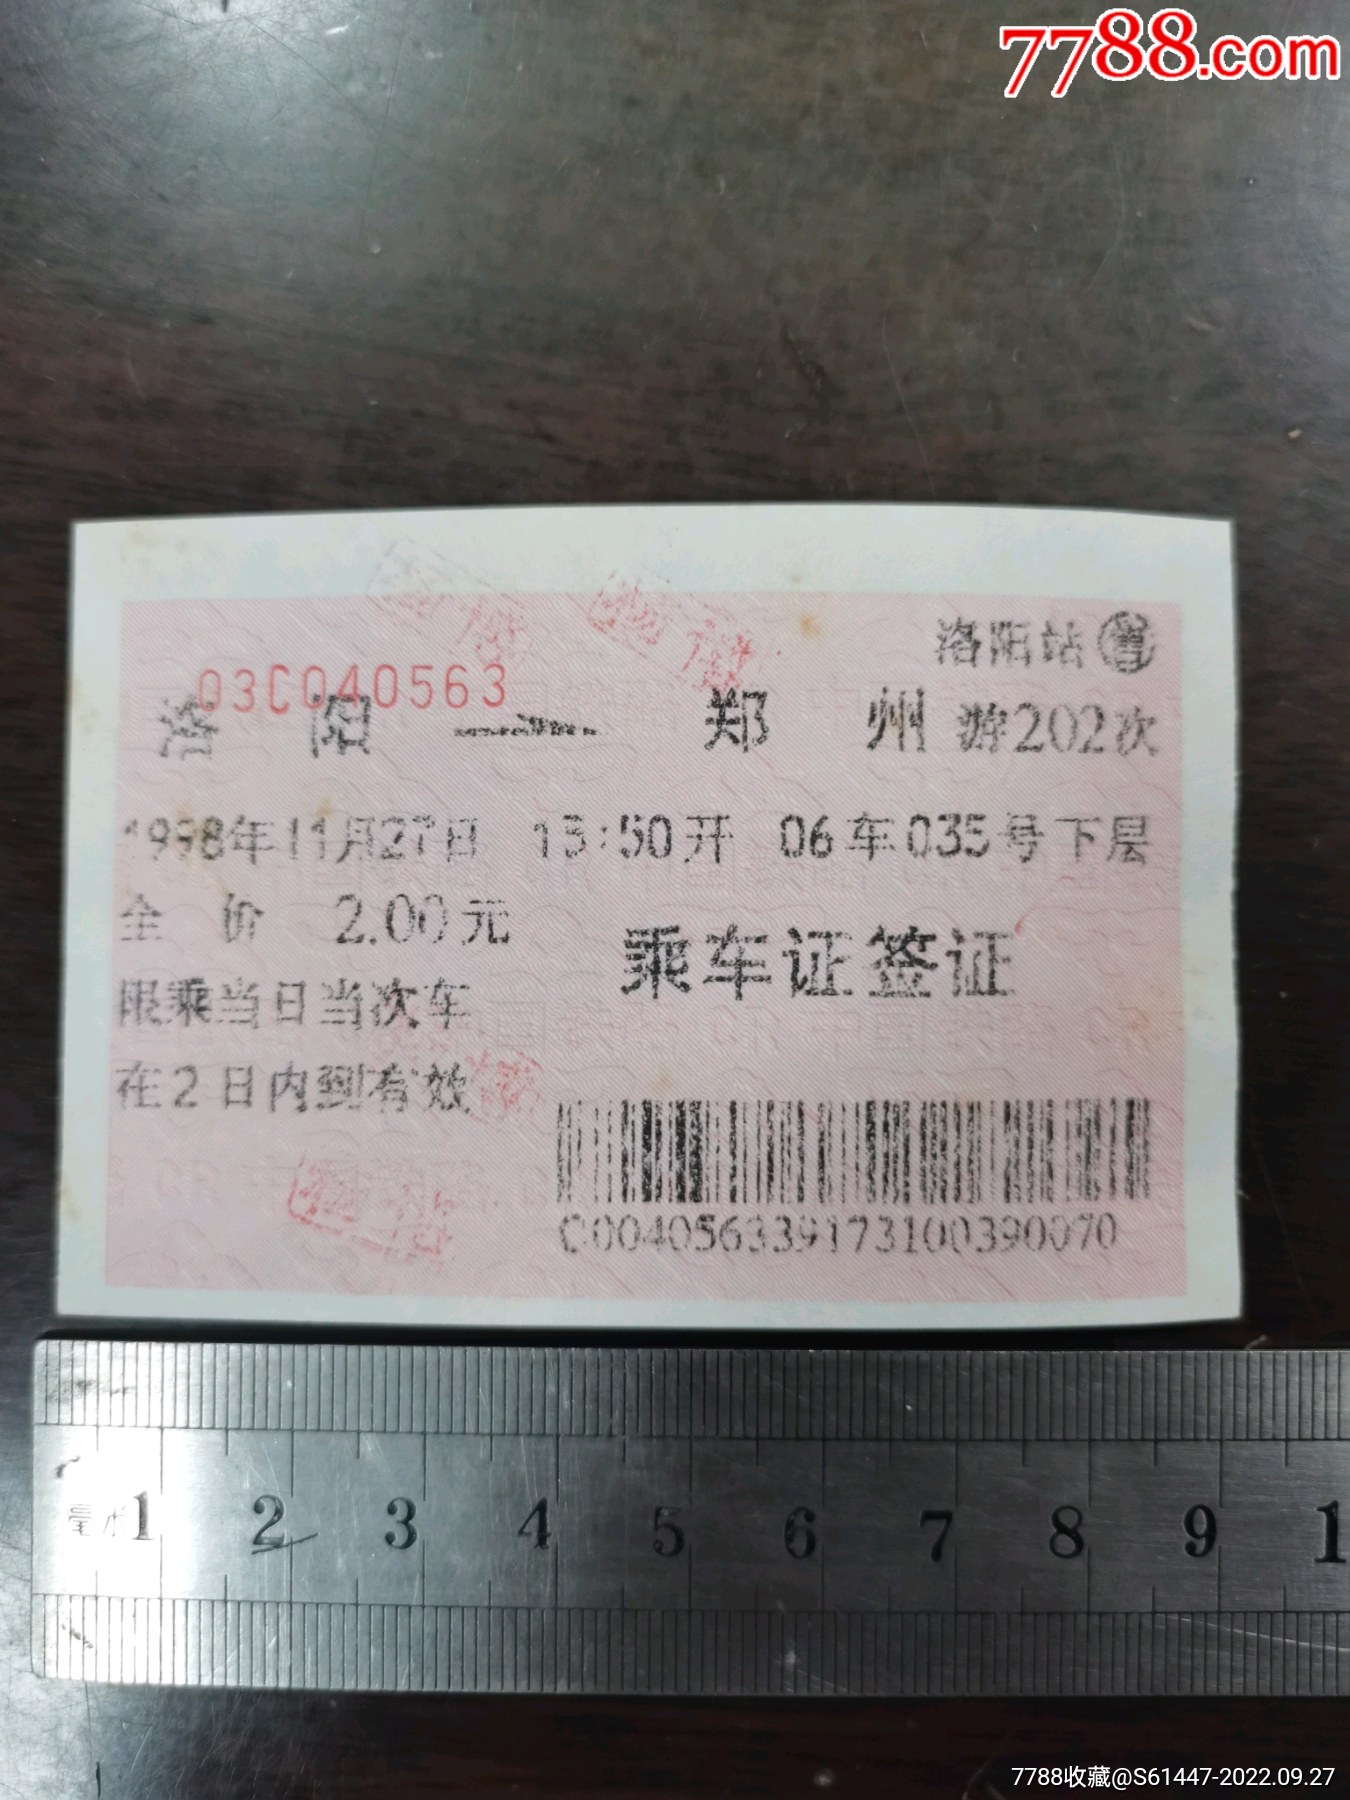 郑州-兰州硬卡火车票1张附季节上浮票1张-价格:2元-se89218757-火车票-零售-7788收藏__收藏热线